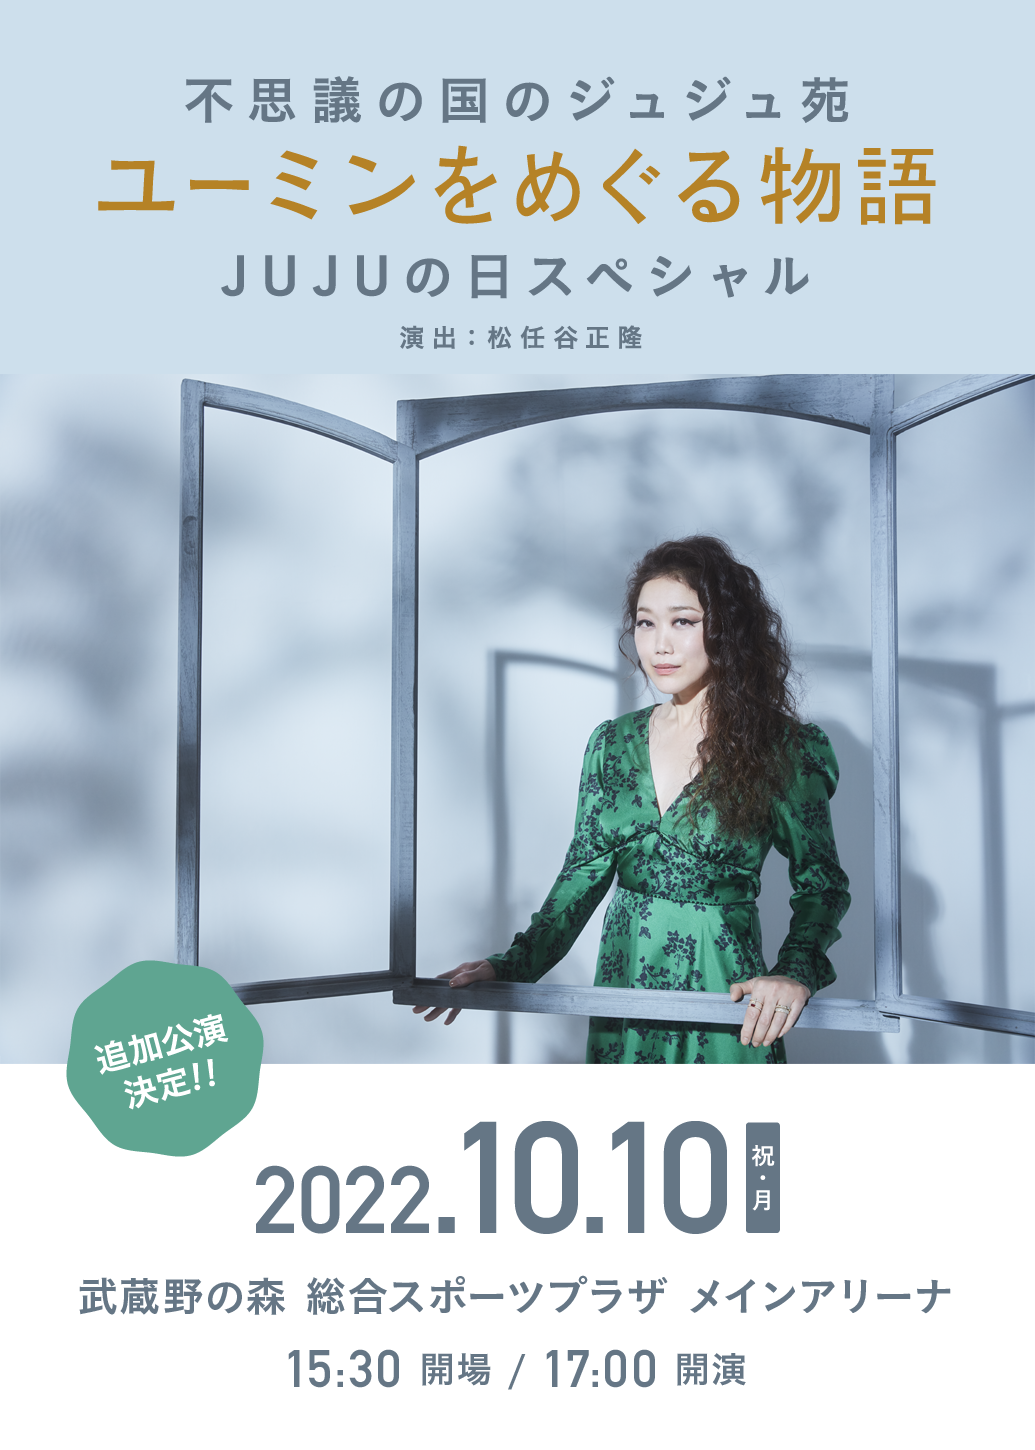 JUJU HALL TOUR 2022 追加公演